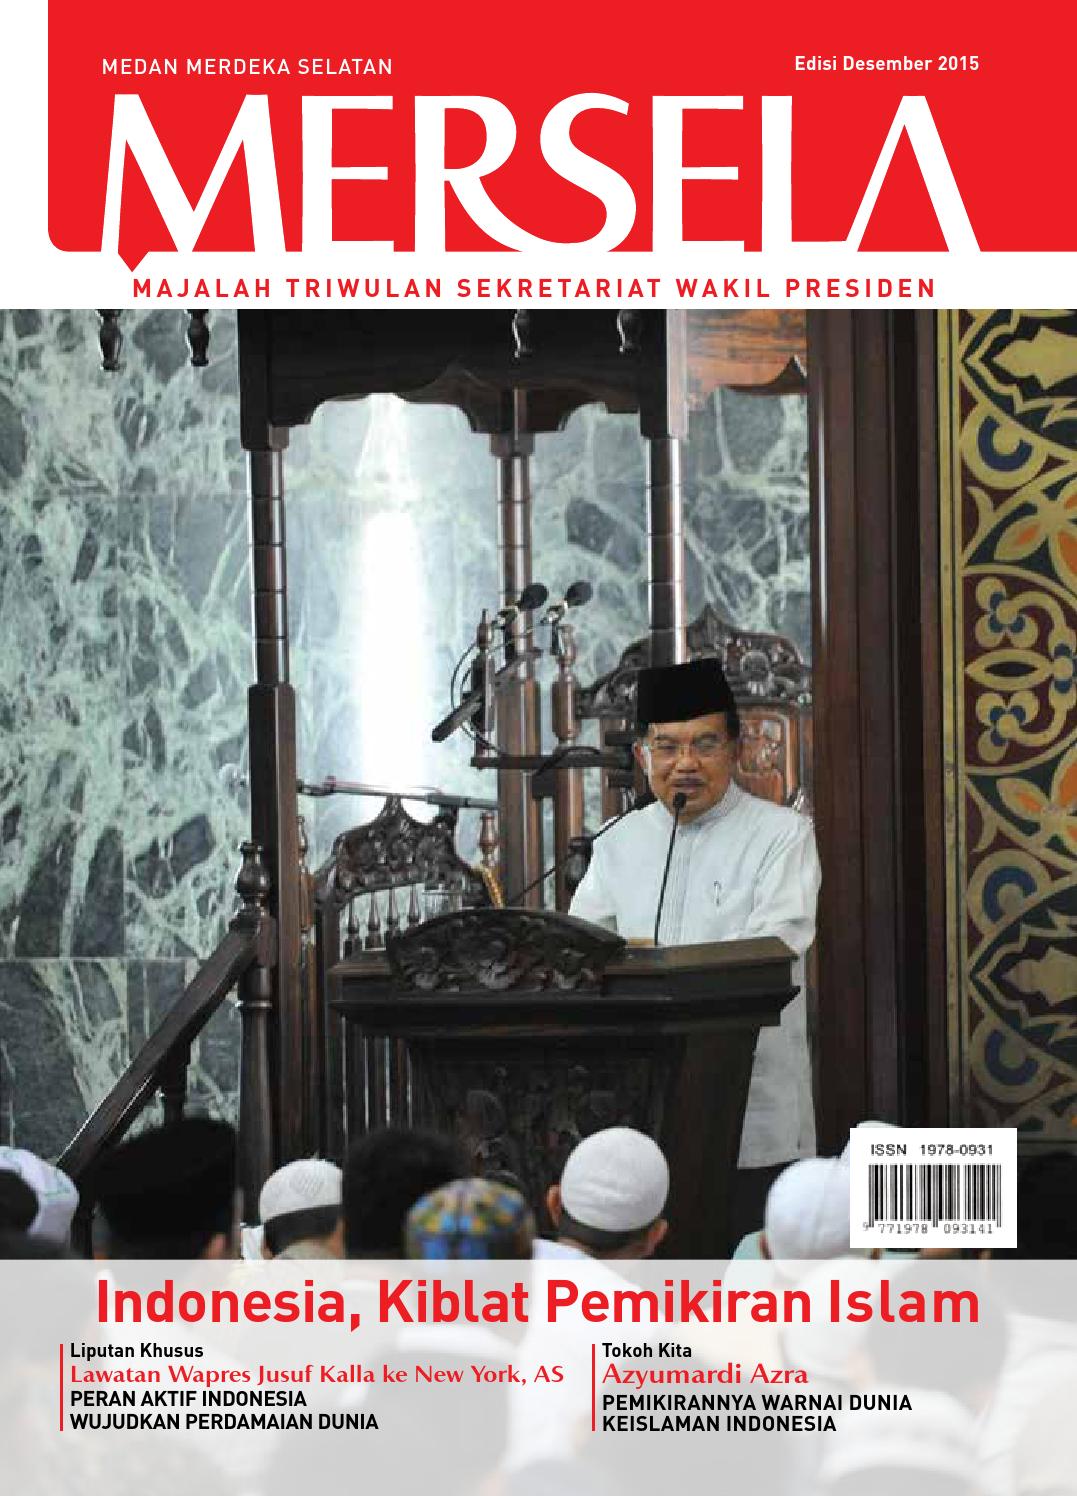 MERSELA : INDONESIA, KIBLAT PEMIKIRAN ISLAM